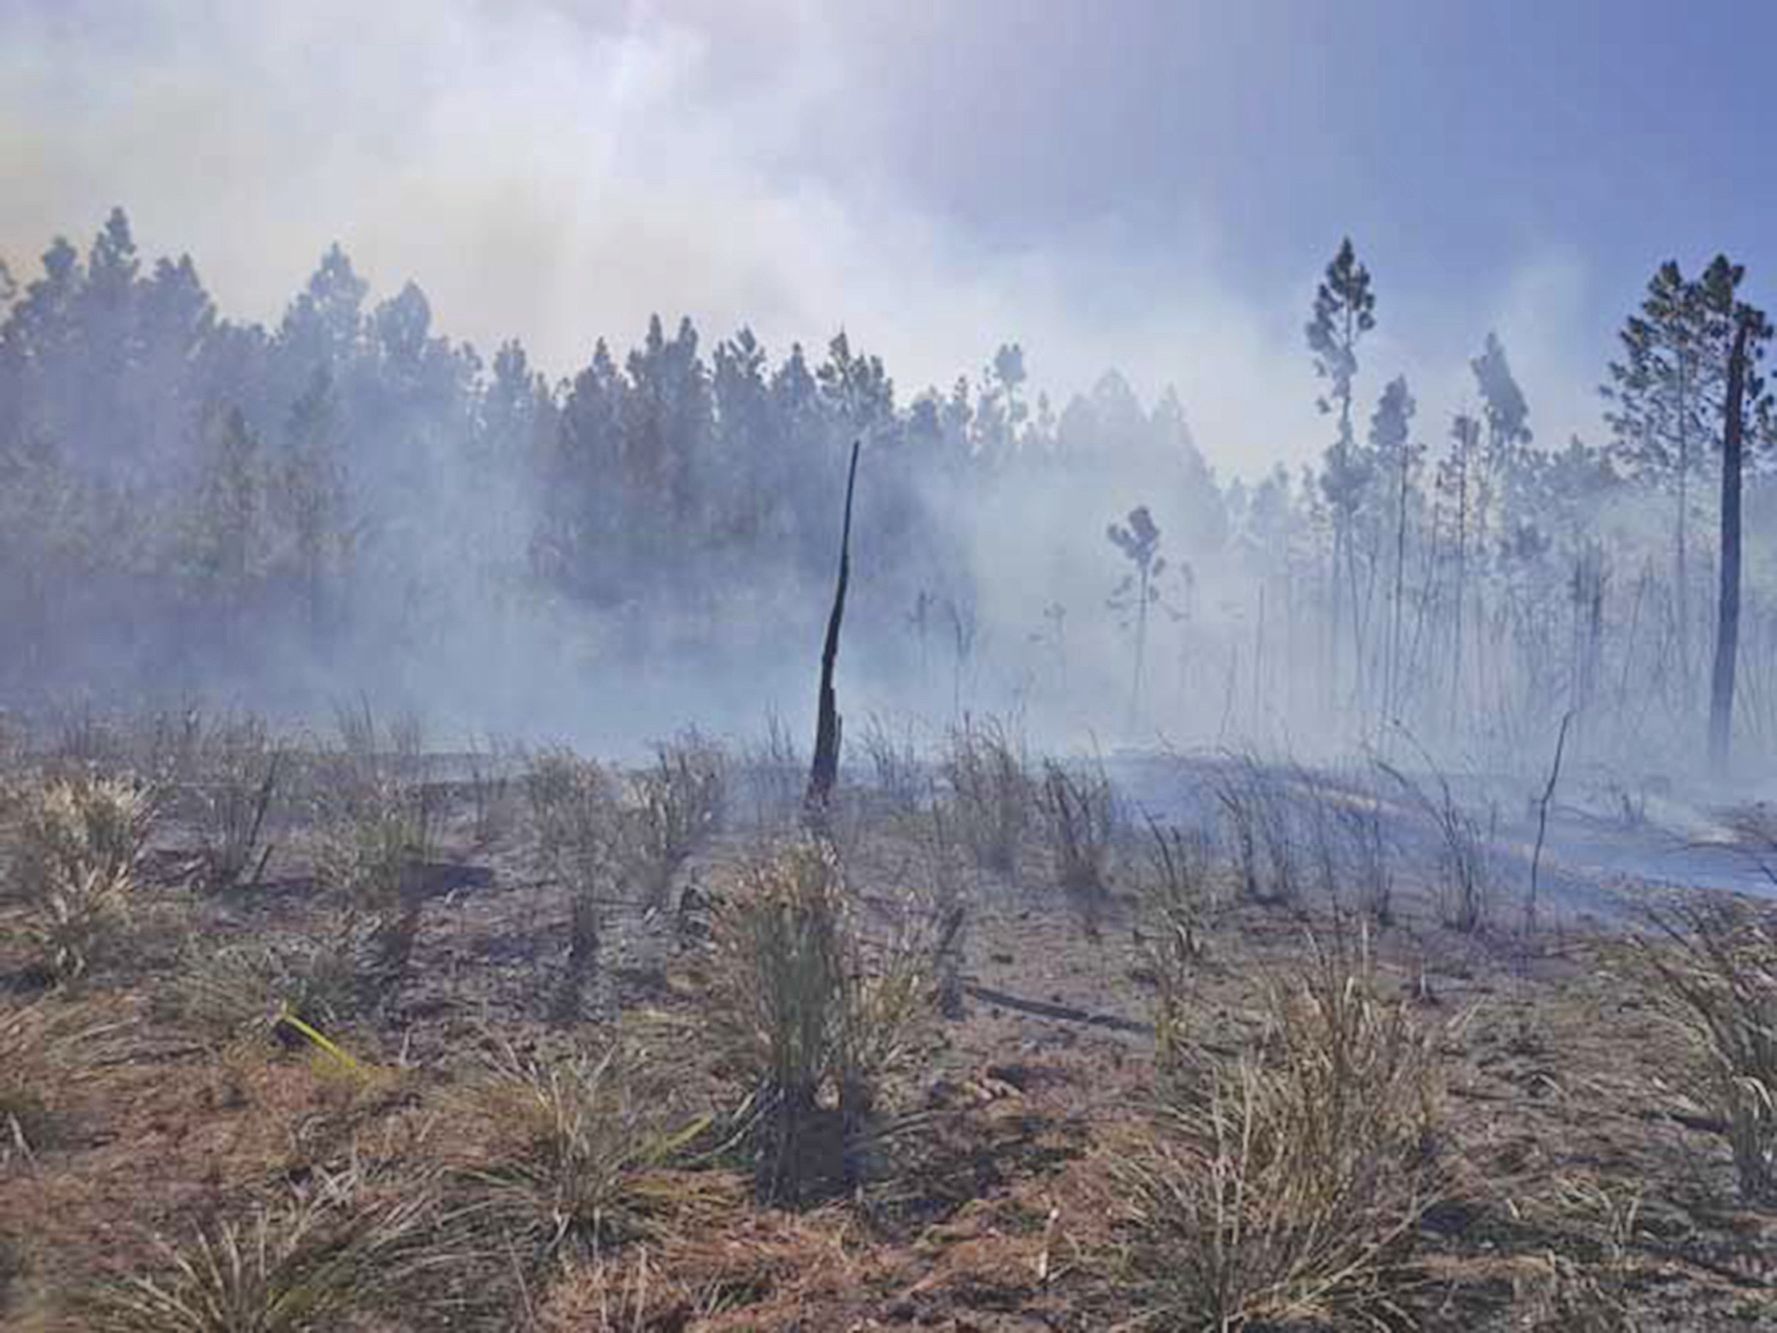 Au total, 126 hectares de végétation, et notamment des pinus, ont été détruits par l’incendie qui a sévi depuis jeudi midi.